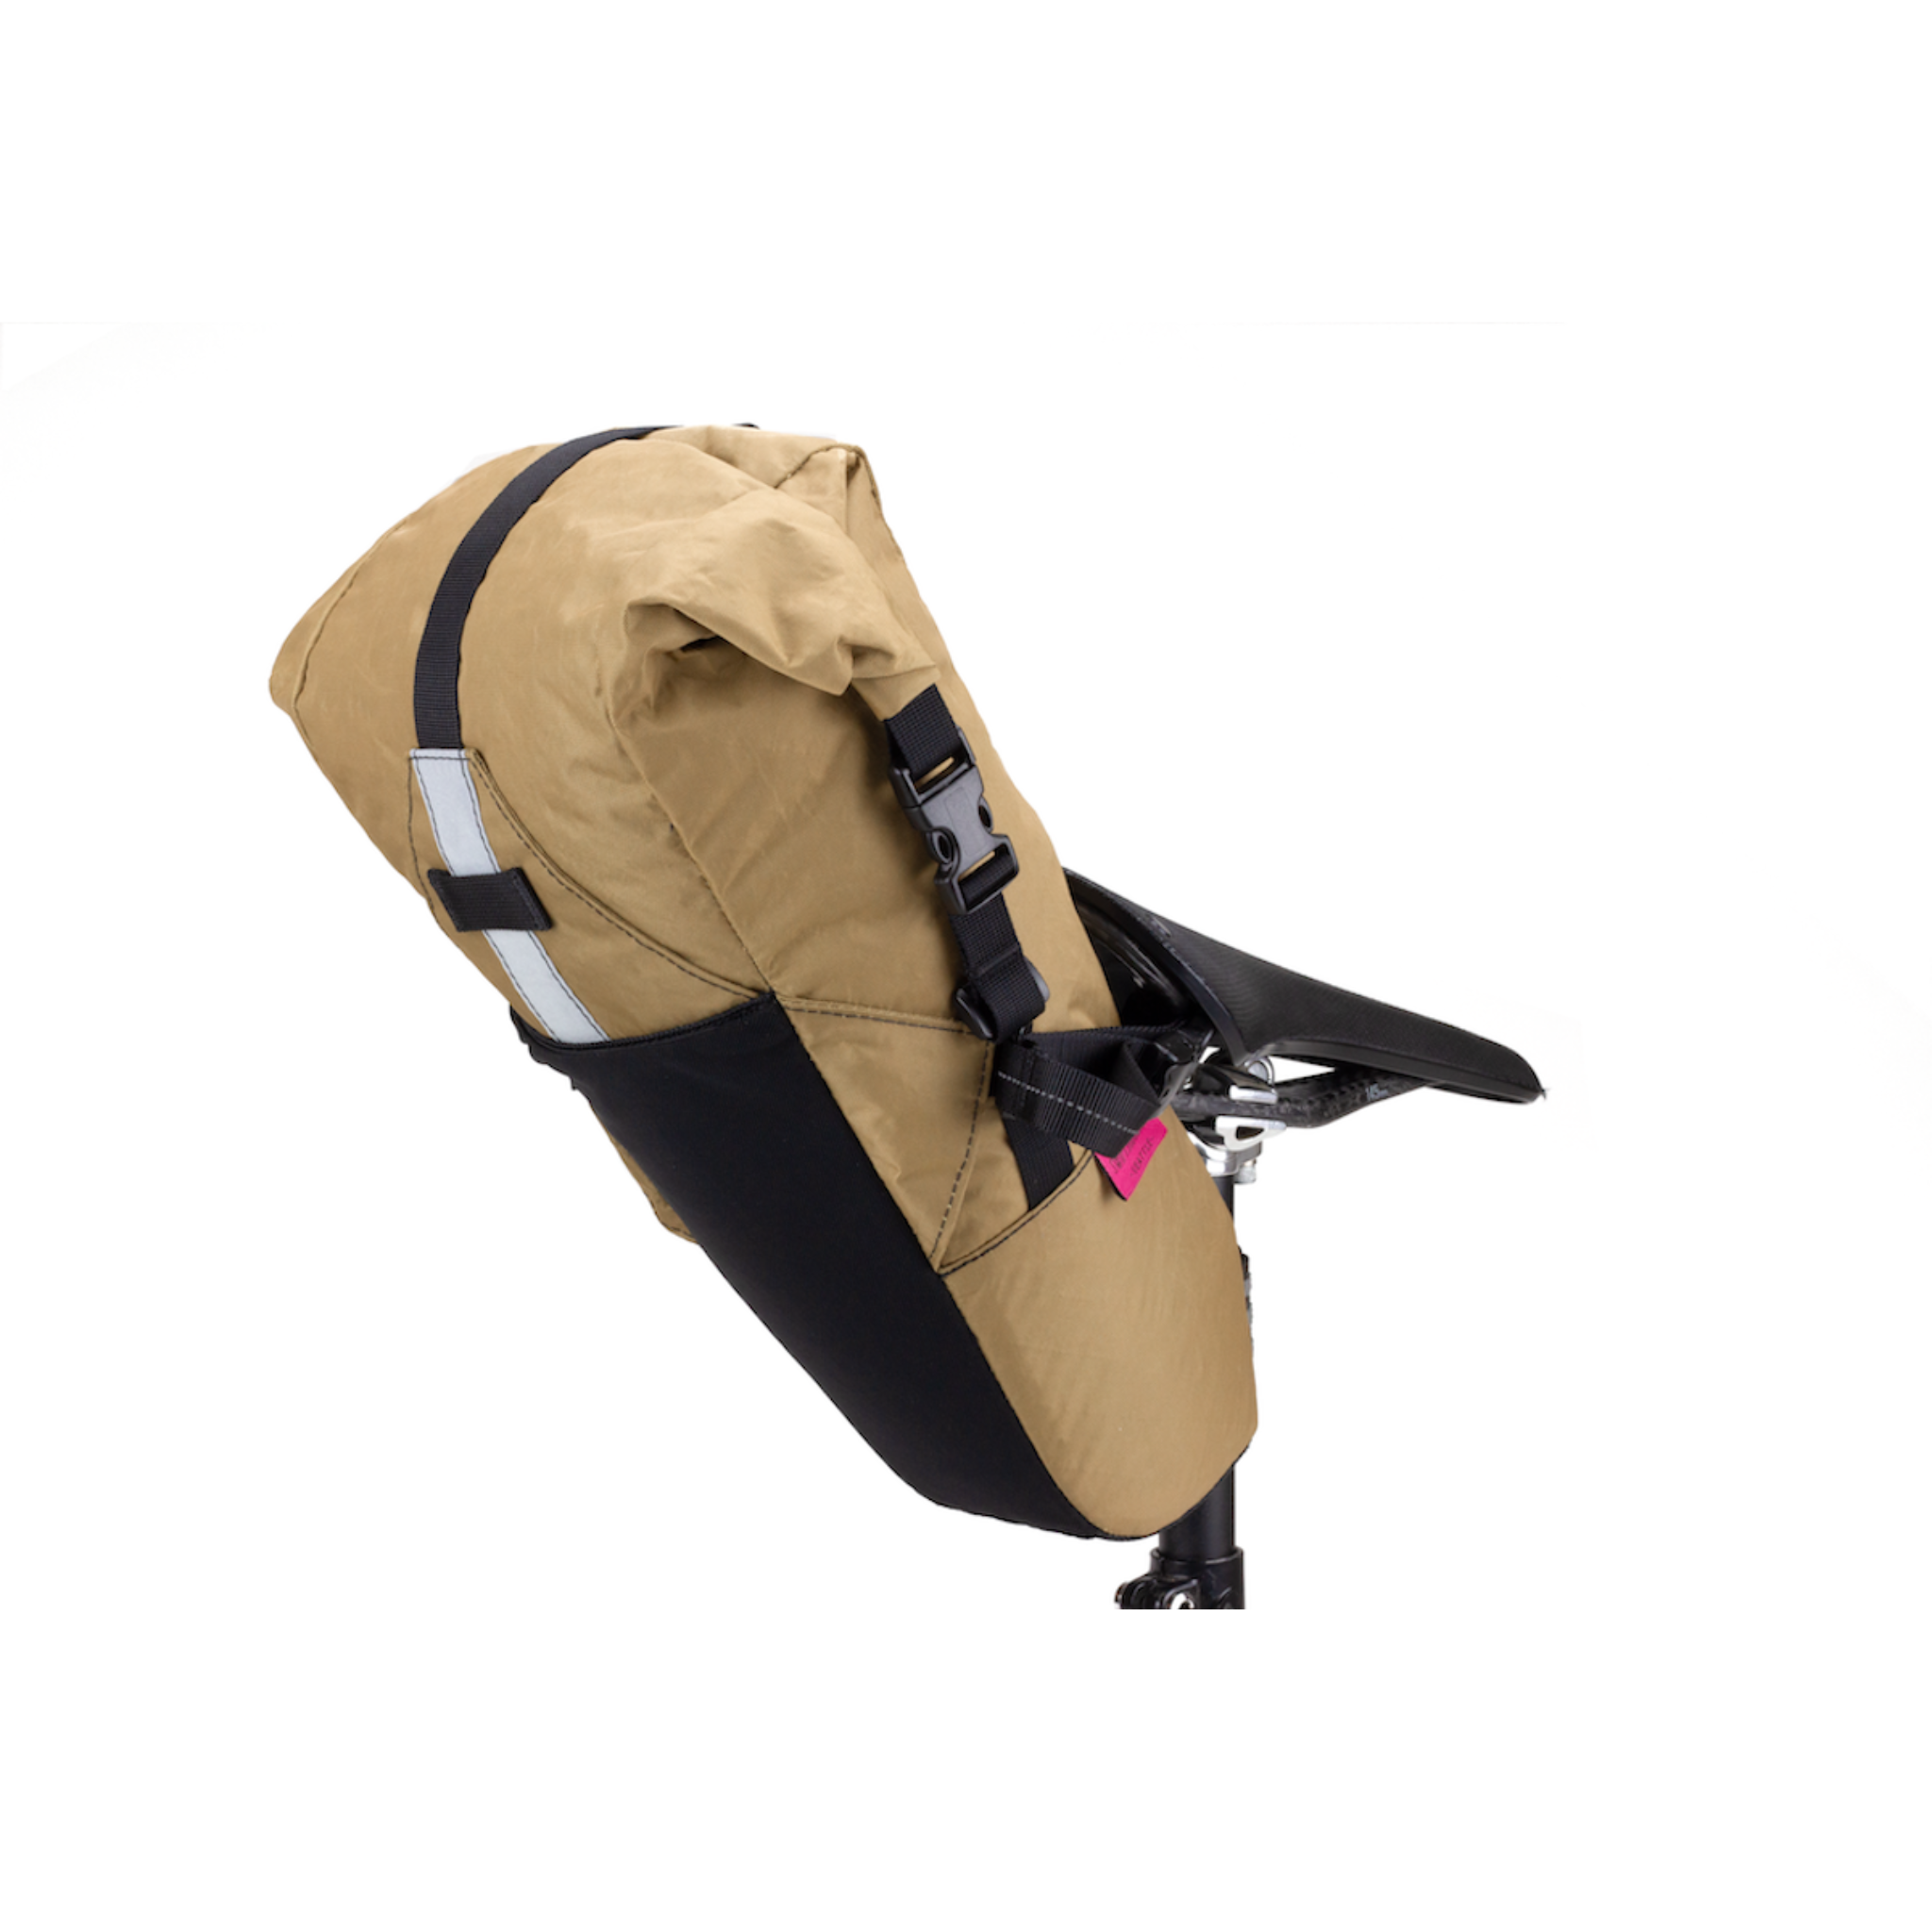 Olliepack Seat Bag - Teal